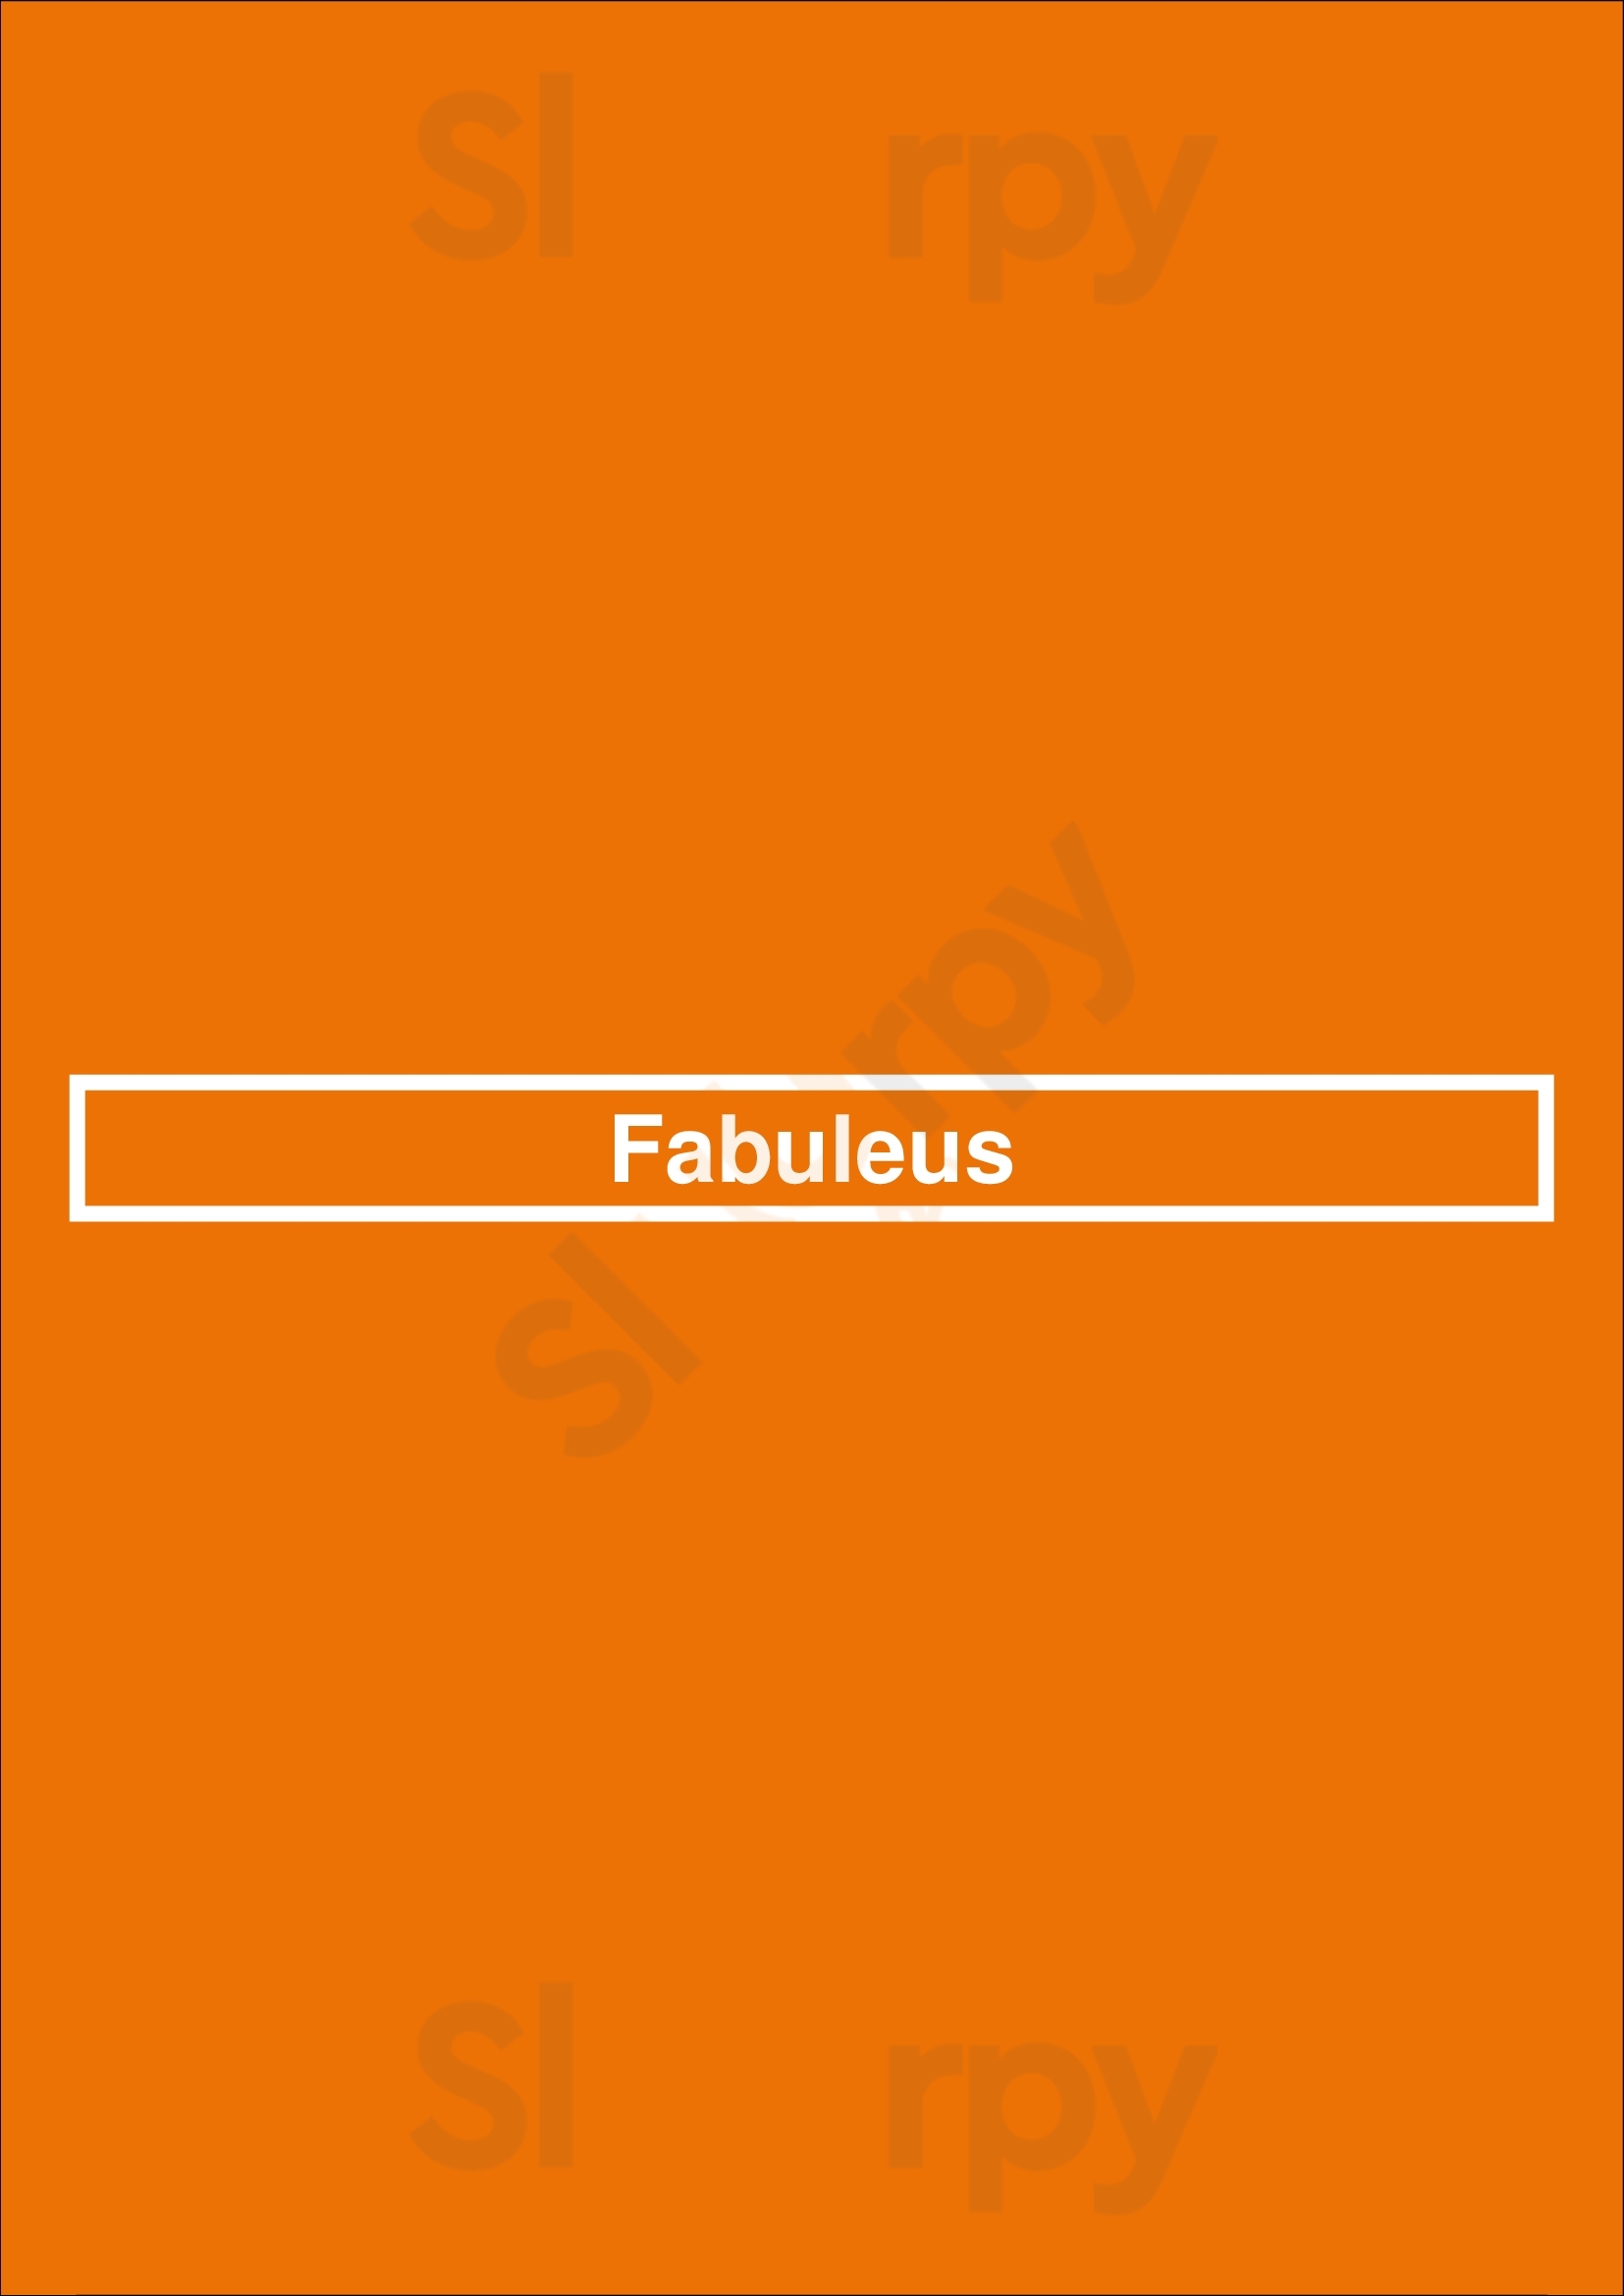 Fabuleus Zuidlaren Menu - 1